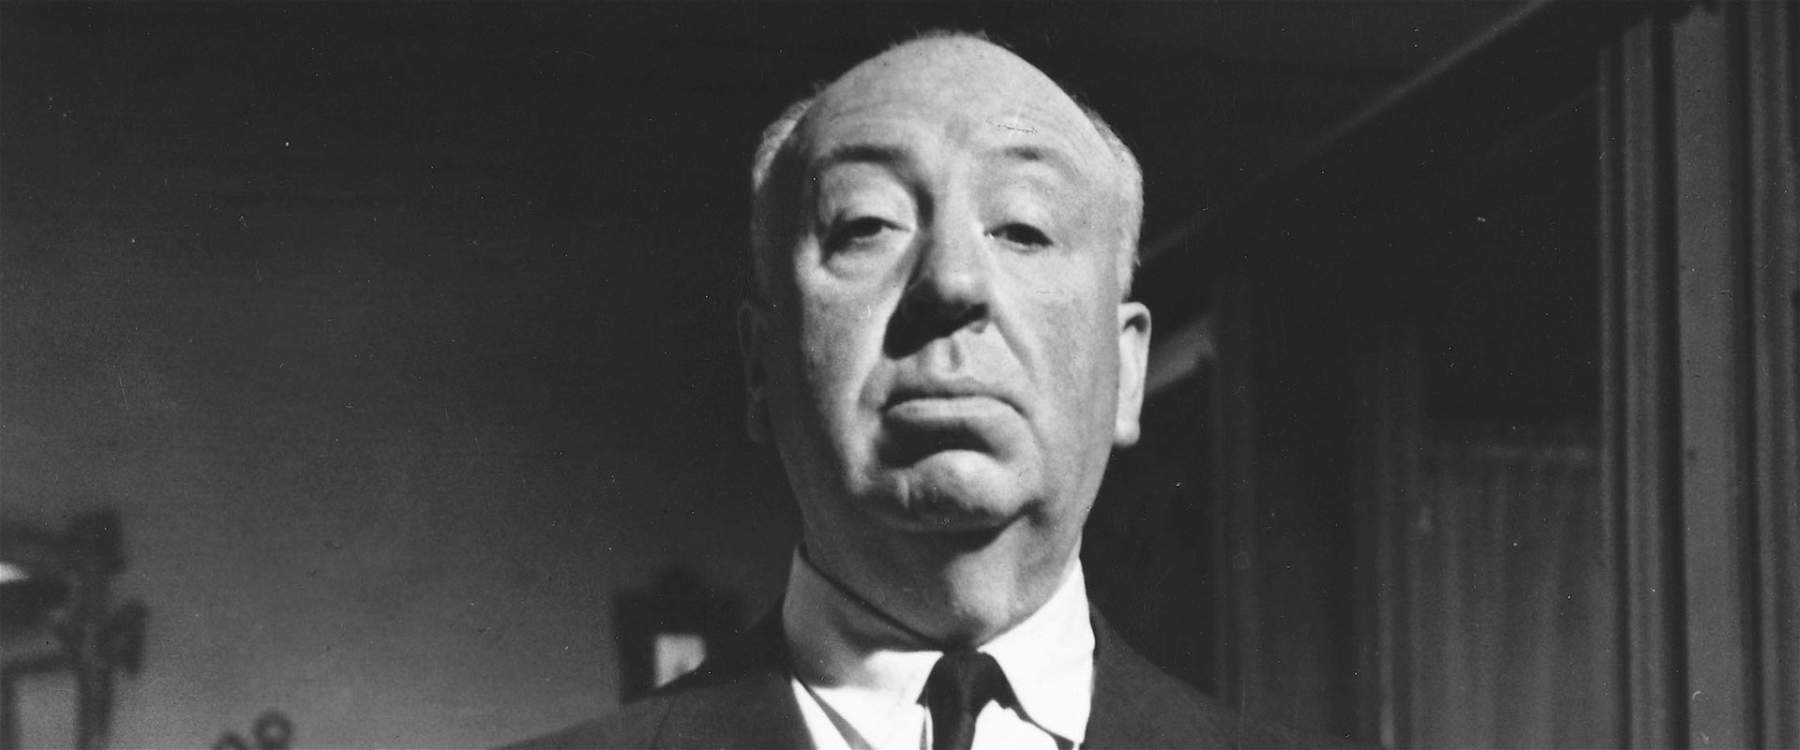 A Monza la mostra sui film di Alfred Hitchcock, raccontati attraverso foto e materiali d'archivio